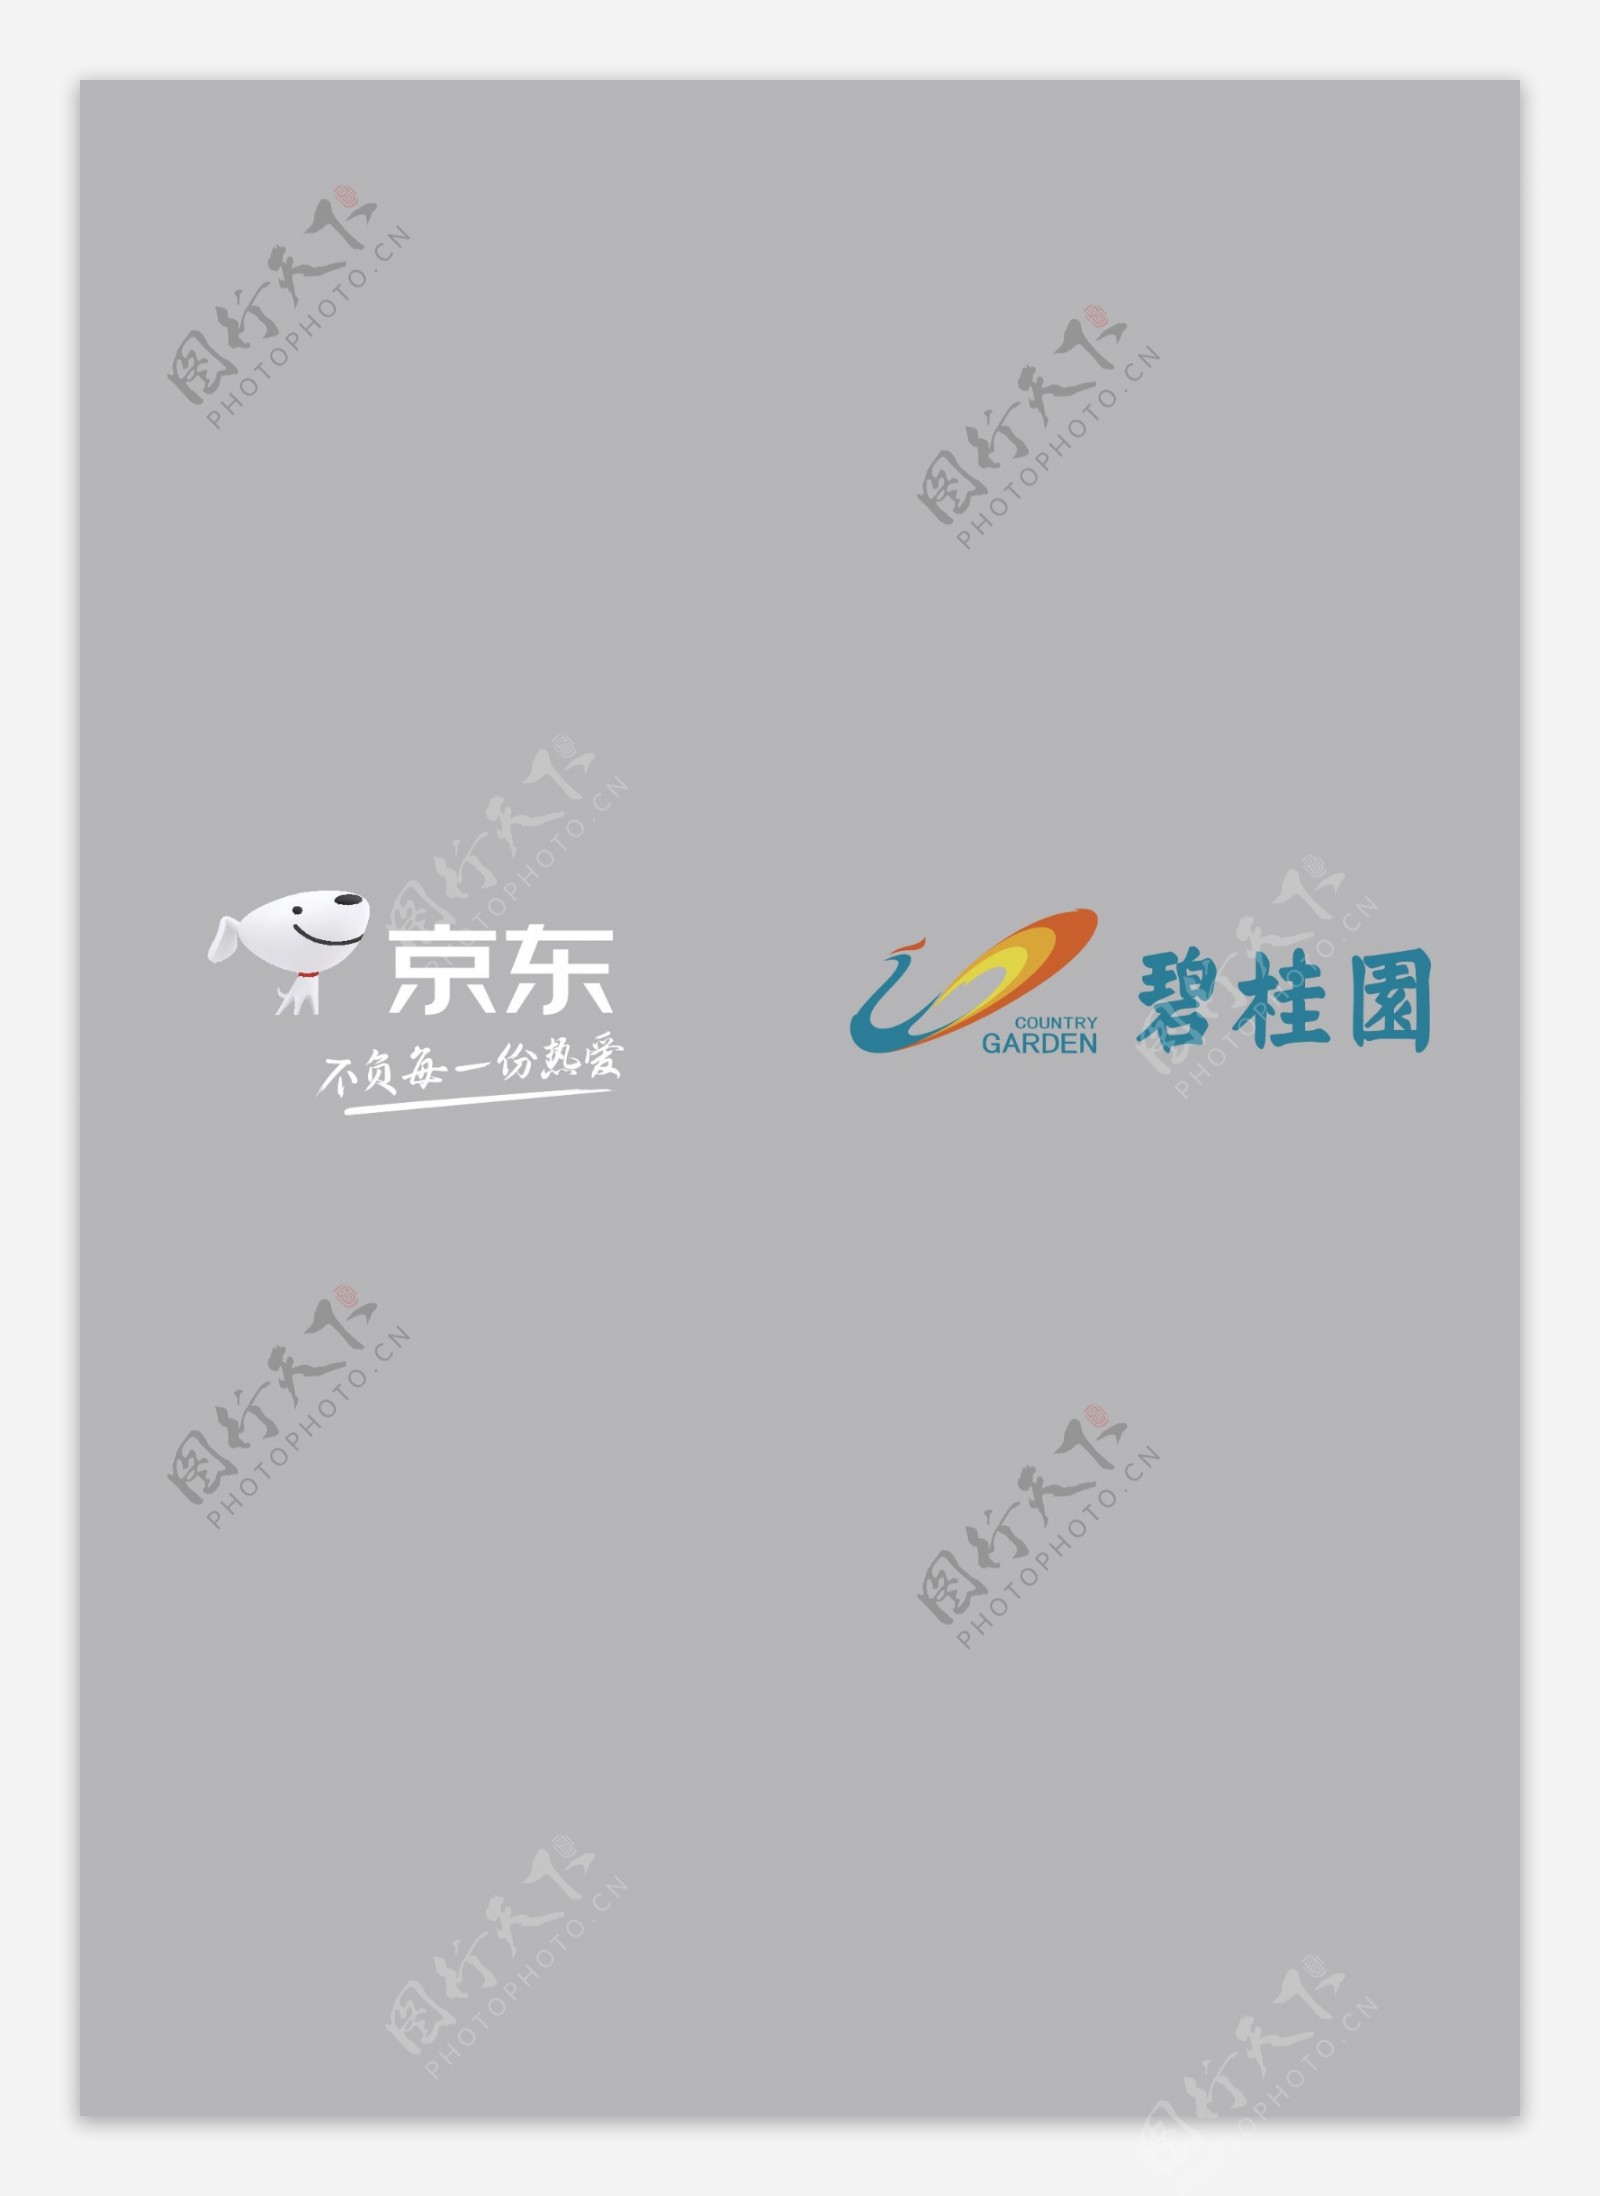 京东碧桂园新logo